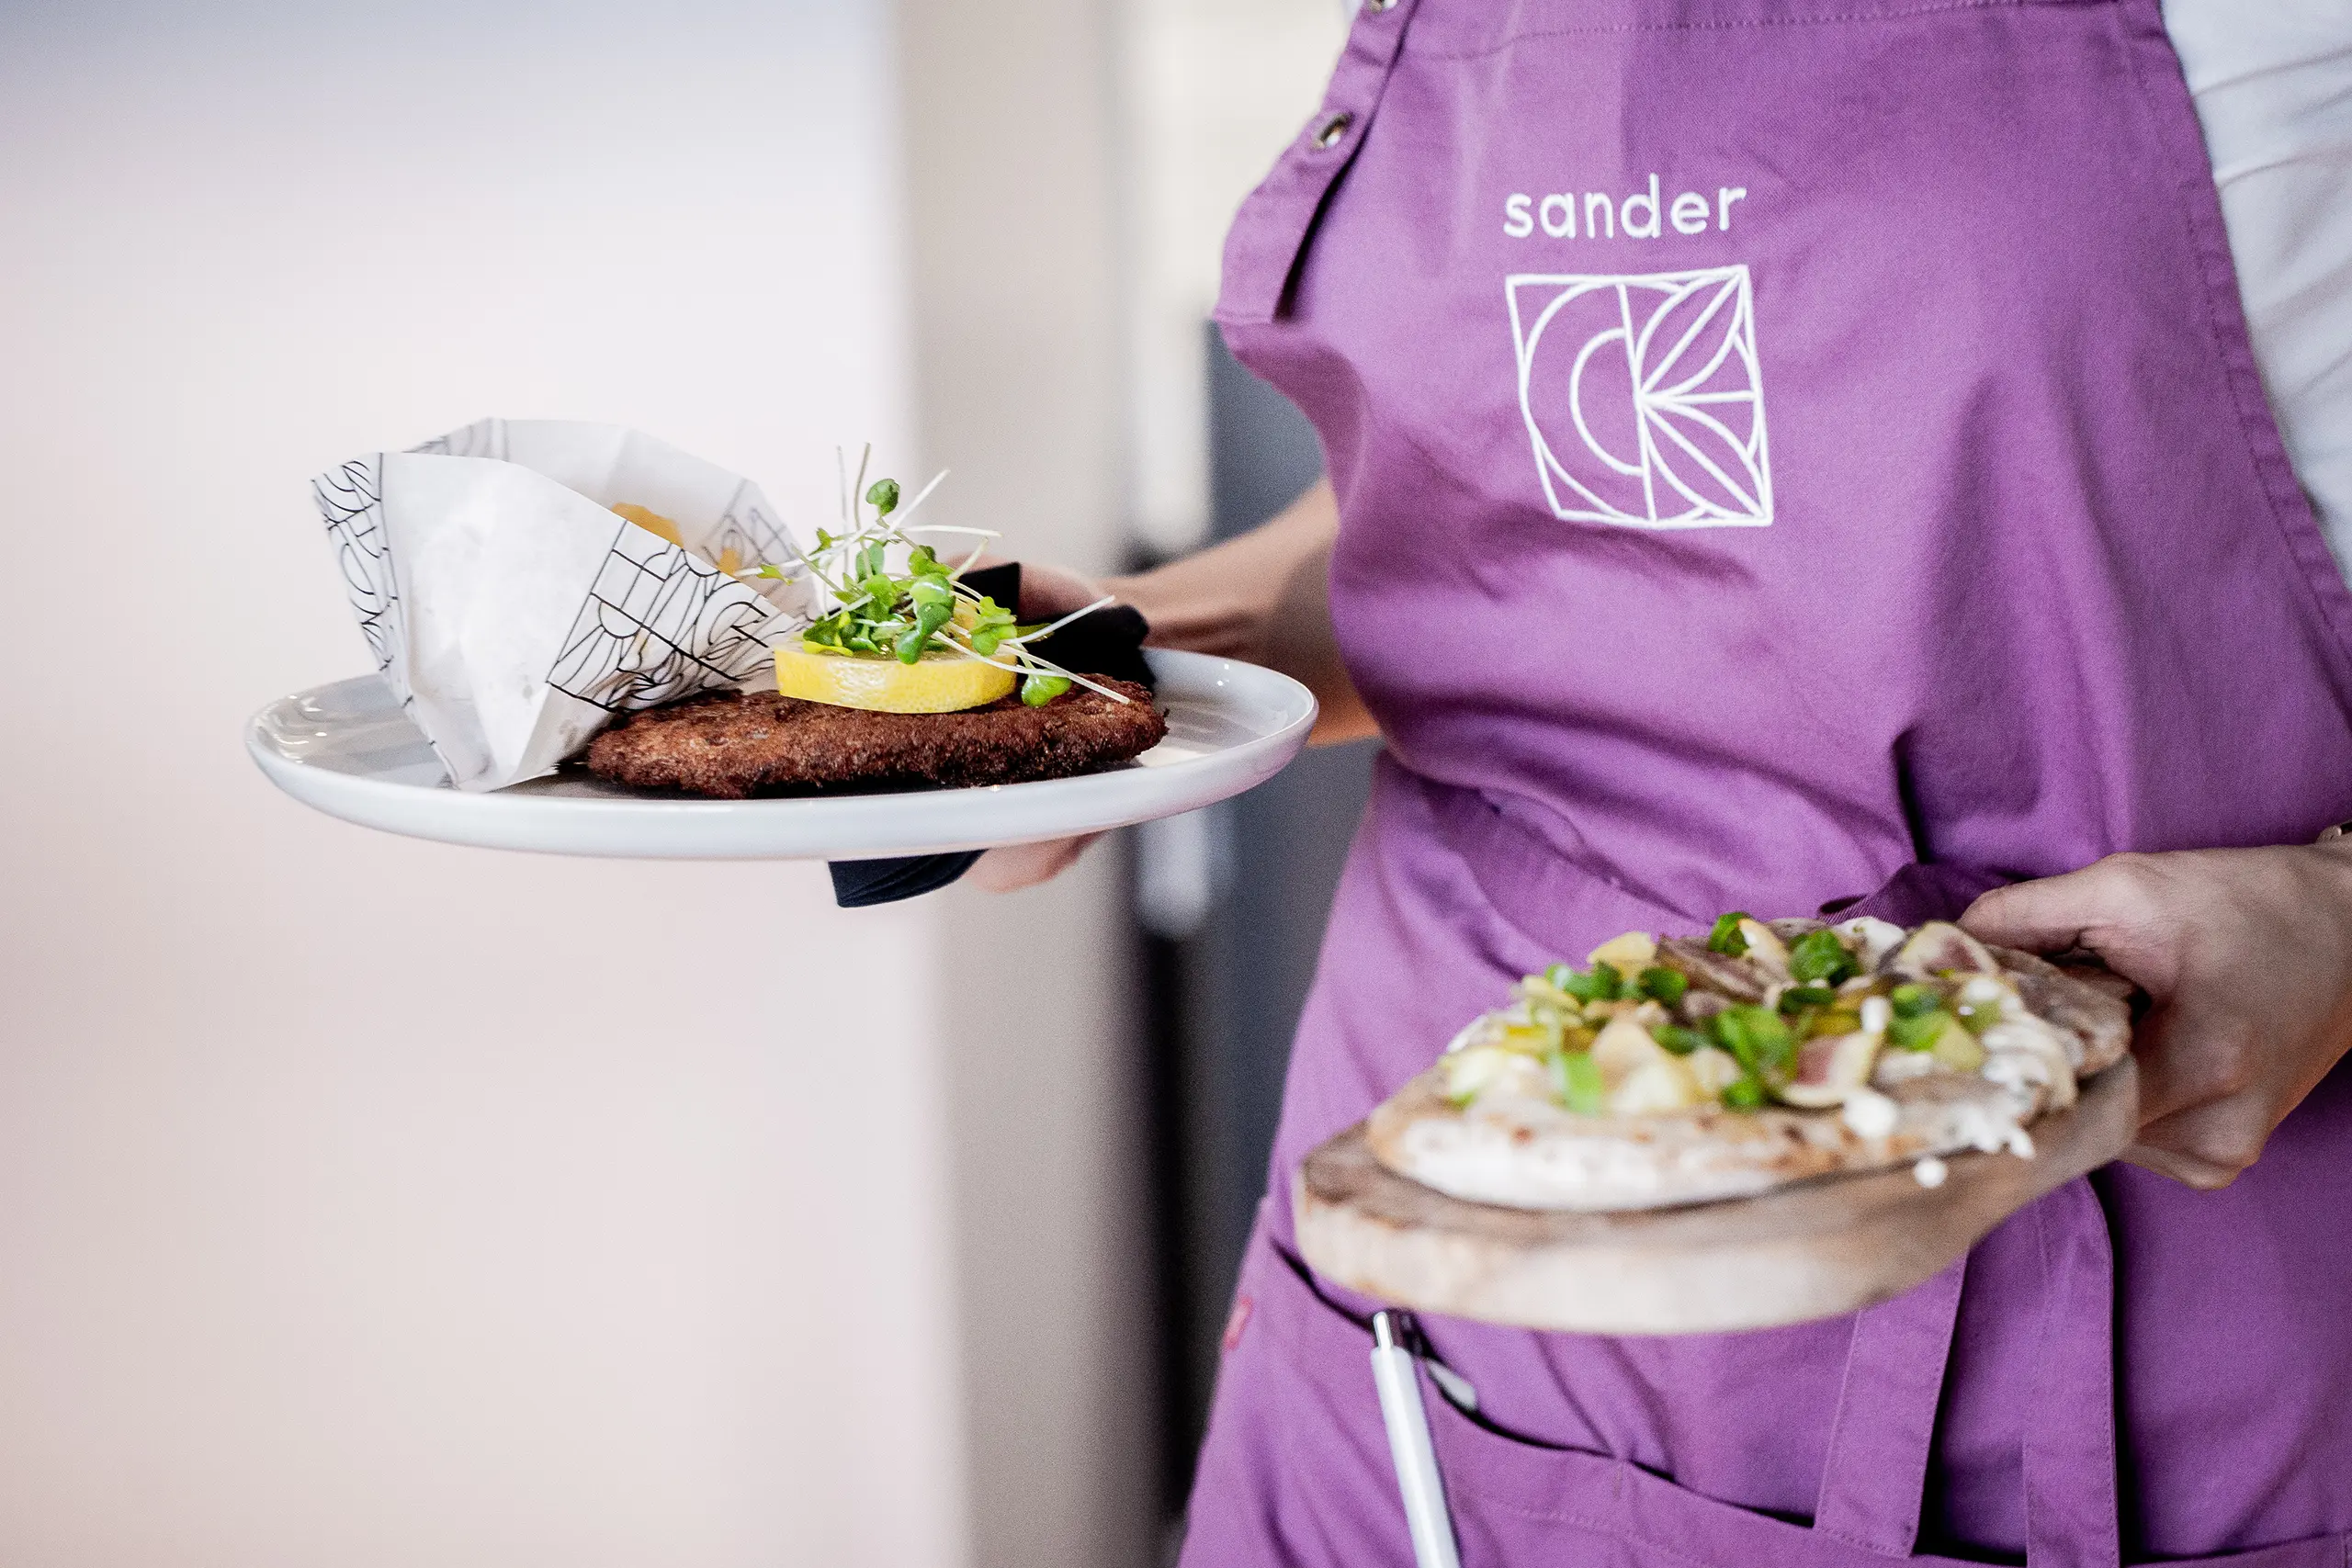 Bild eines Kellners, der eine violette Schürze mit dem neuen Sander-Logo trägt, während er zwei Teller mit Speisen hält.